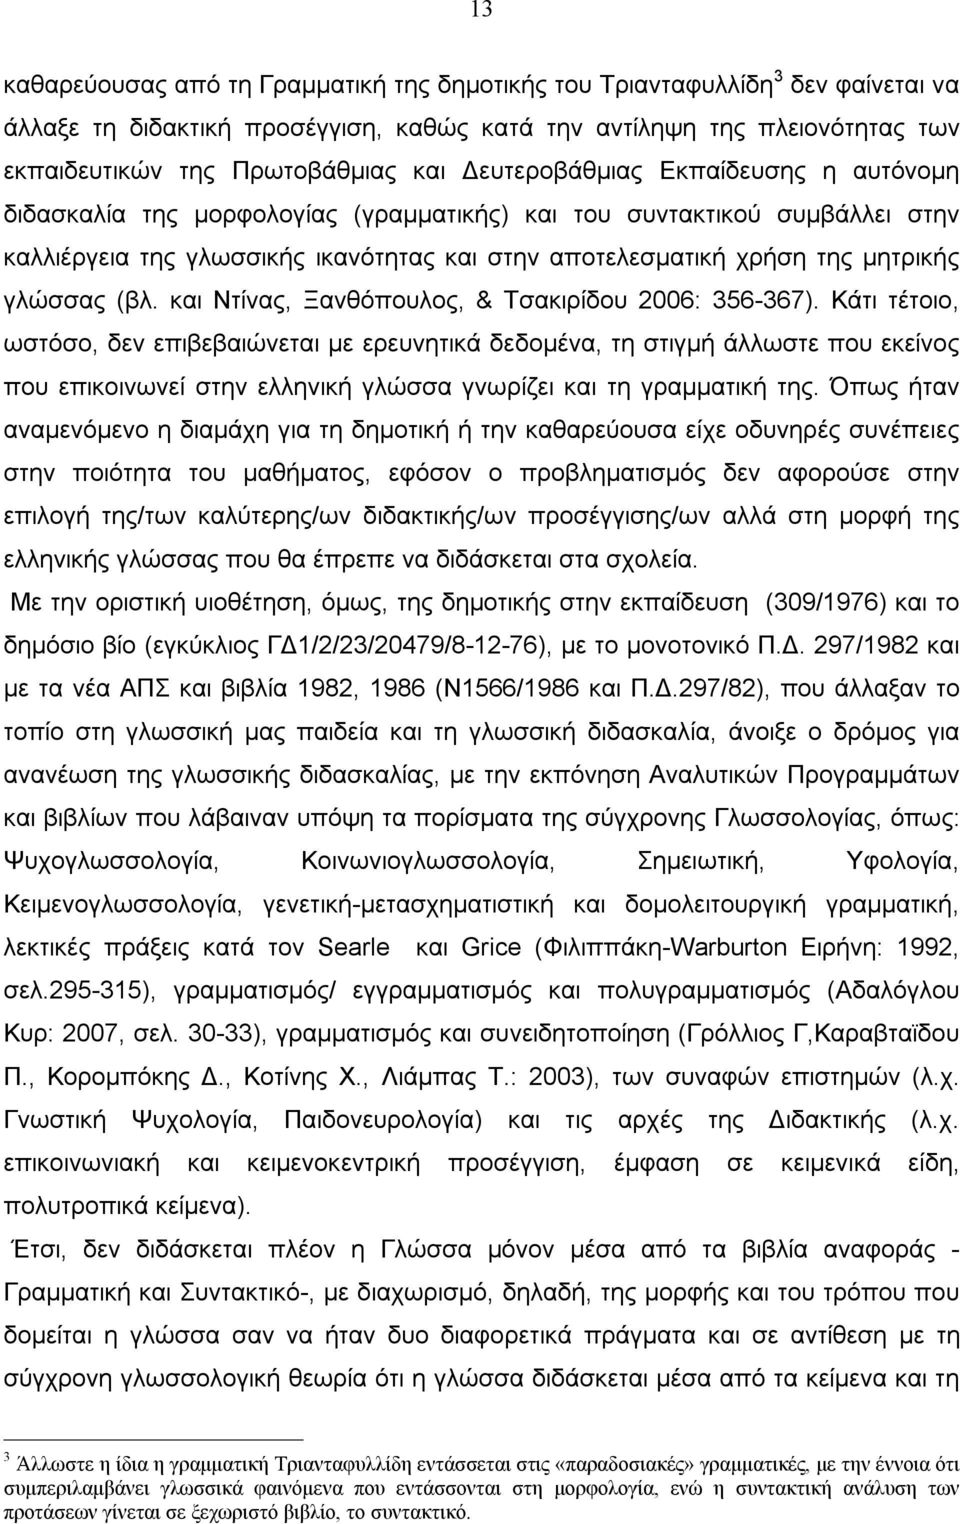 γλώσσας (βλ. και Ντίνας, Ξανθόπουλος, & Τσακιρίδου 2006: 356-367).